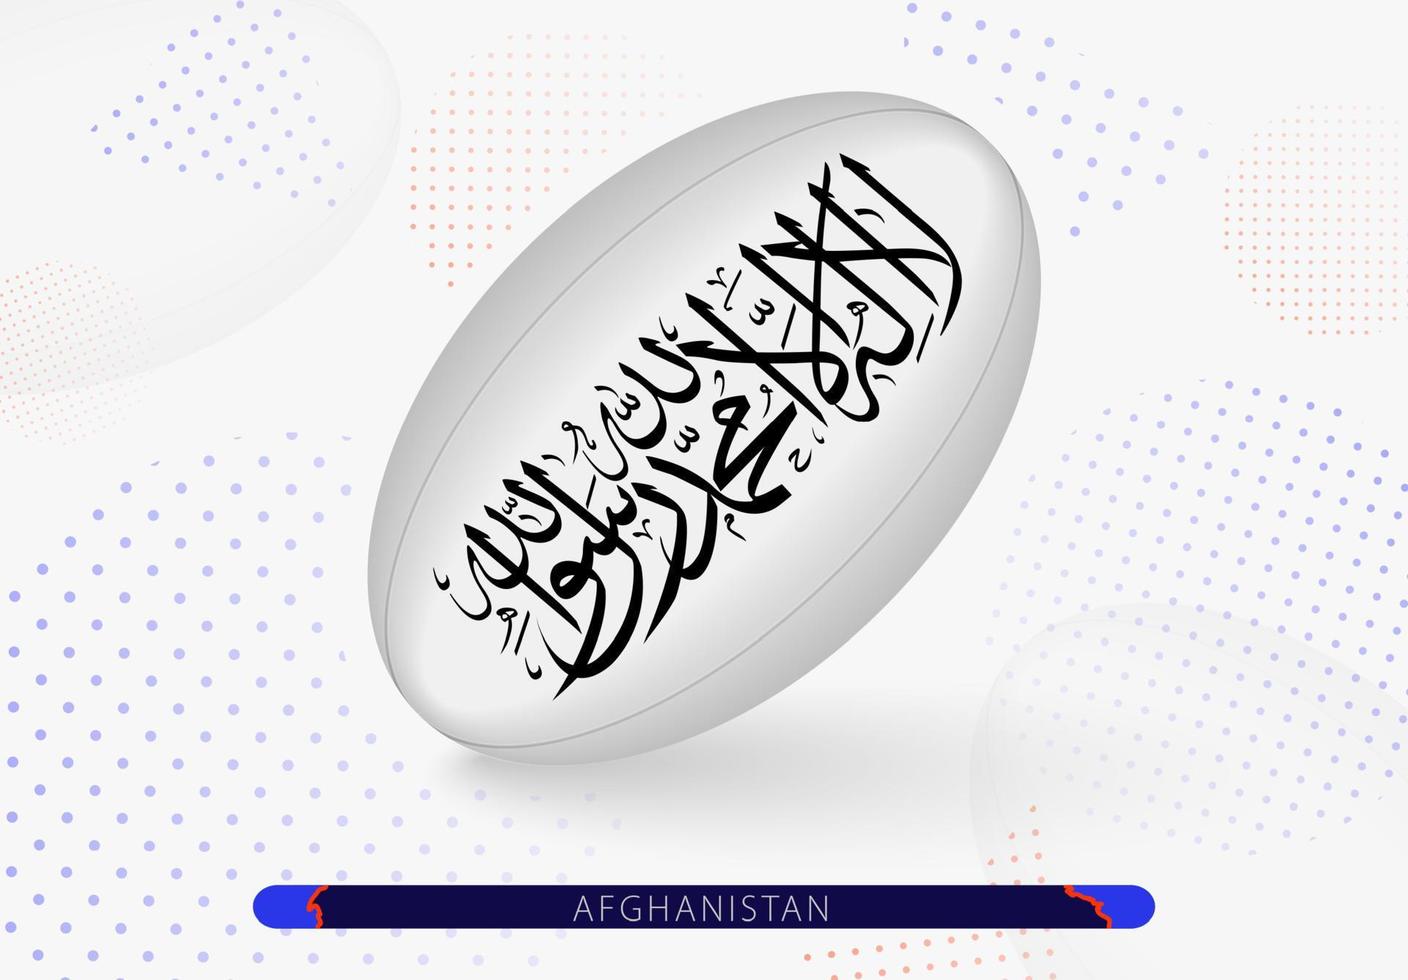 Rugbyball mit der Flagge Afghanistans darauf. Ausrüstung für das Rugby-Team von Afghanistan. vektor